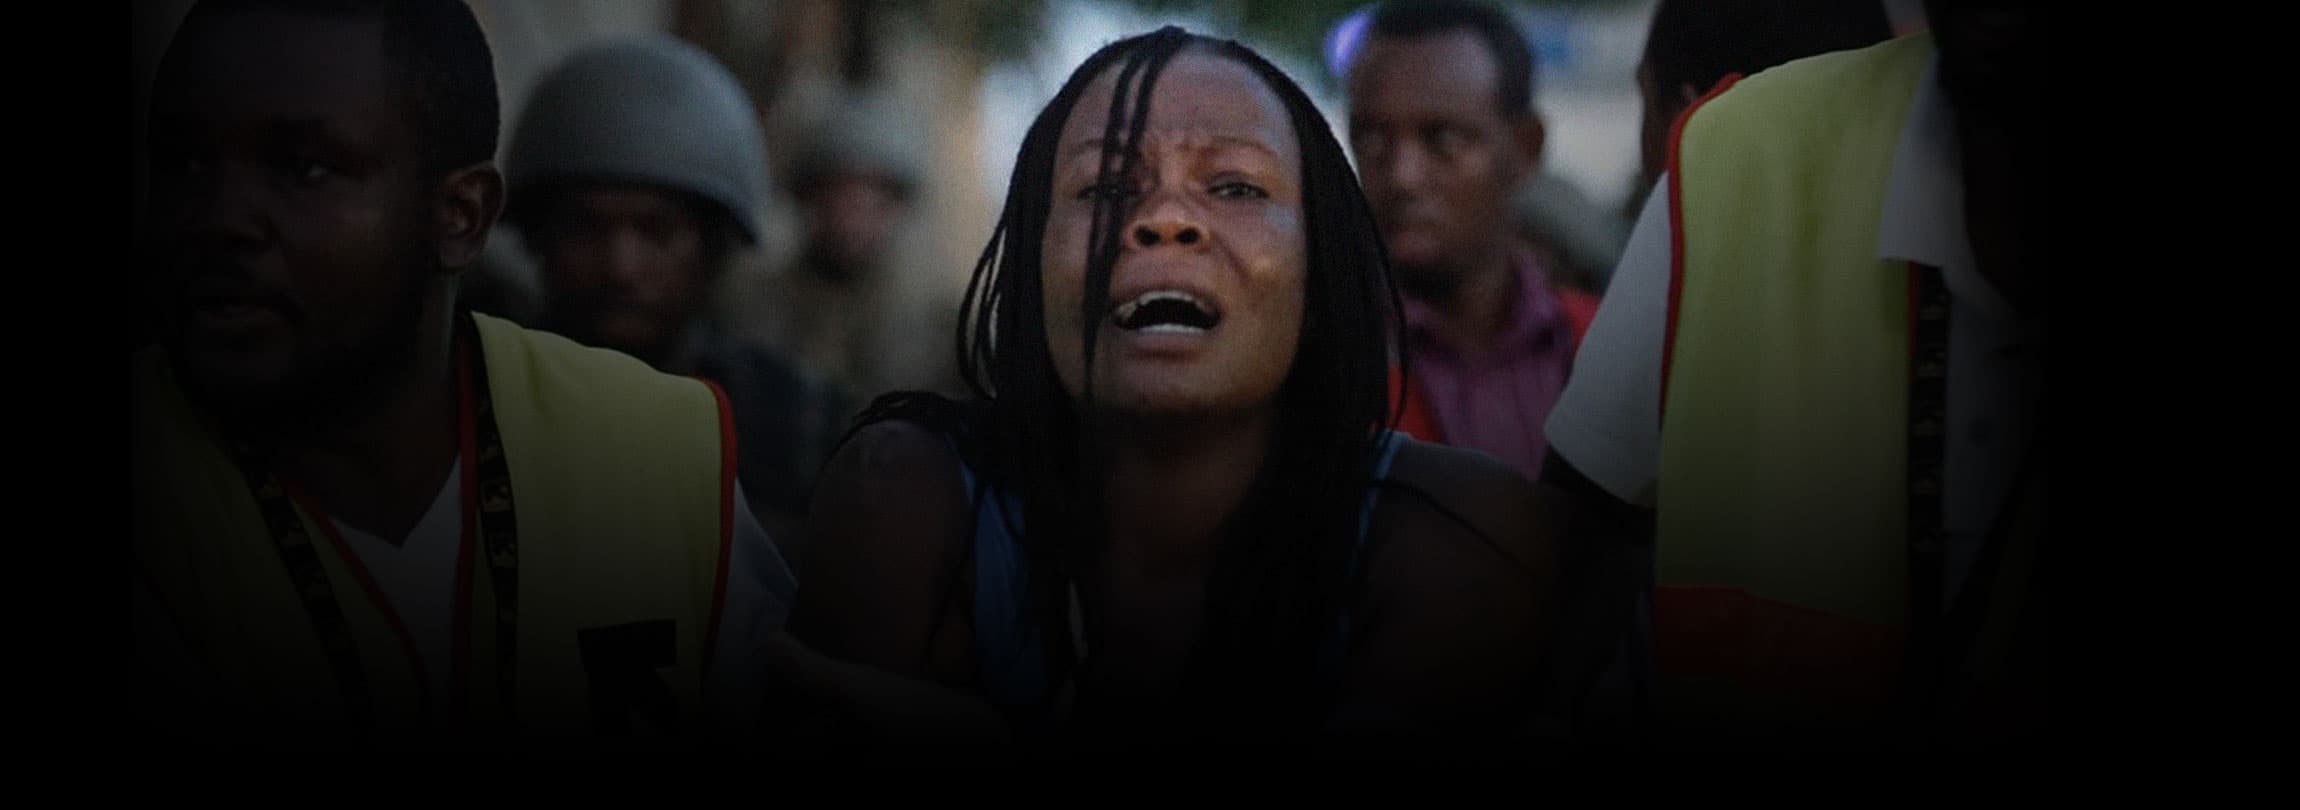 Estudantes mortos no Quênia eram cristãos